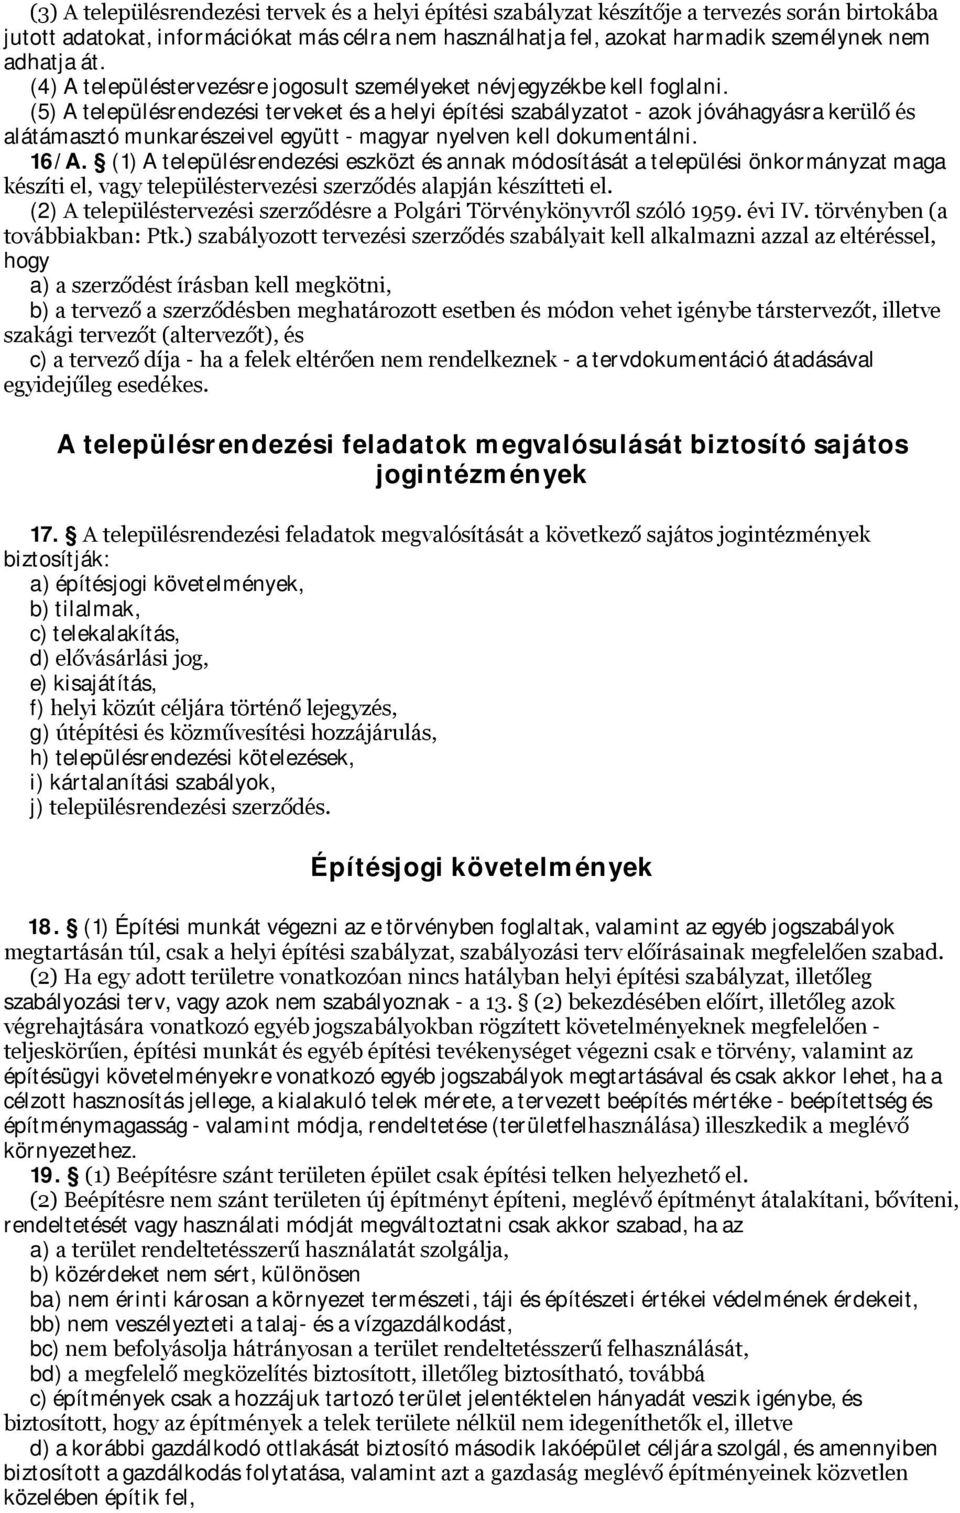 (5) A településrendezési terveket és a helyi építési szabályzatot - azok jóváhagyásra kerülő és alátámasztó munkarészeivel együtt - magyar nyelven kell dokumentálni. 16/A.